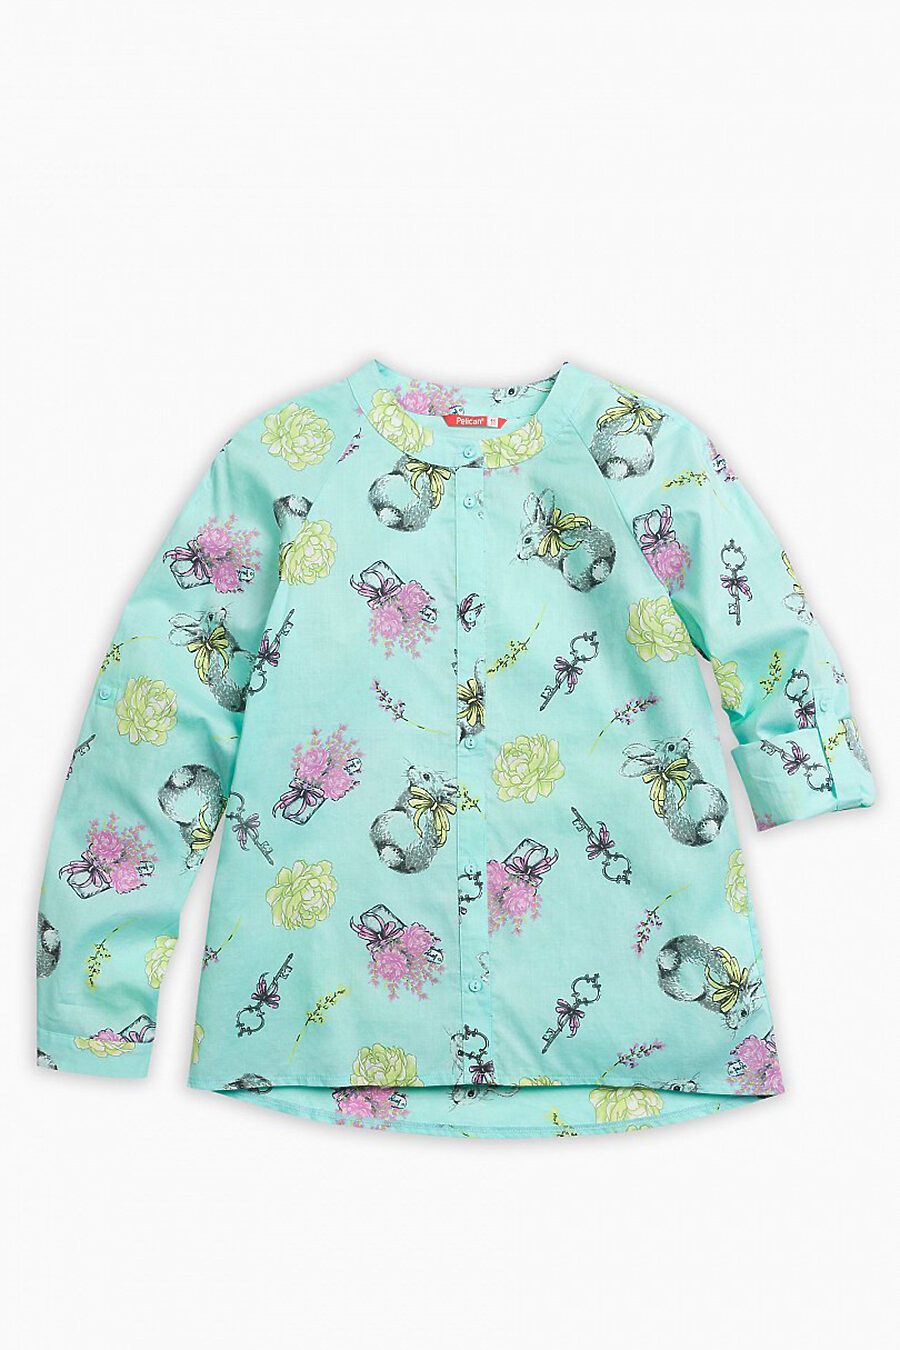 Блуза PELICAN (122824), купить в Moyo.moda